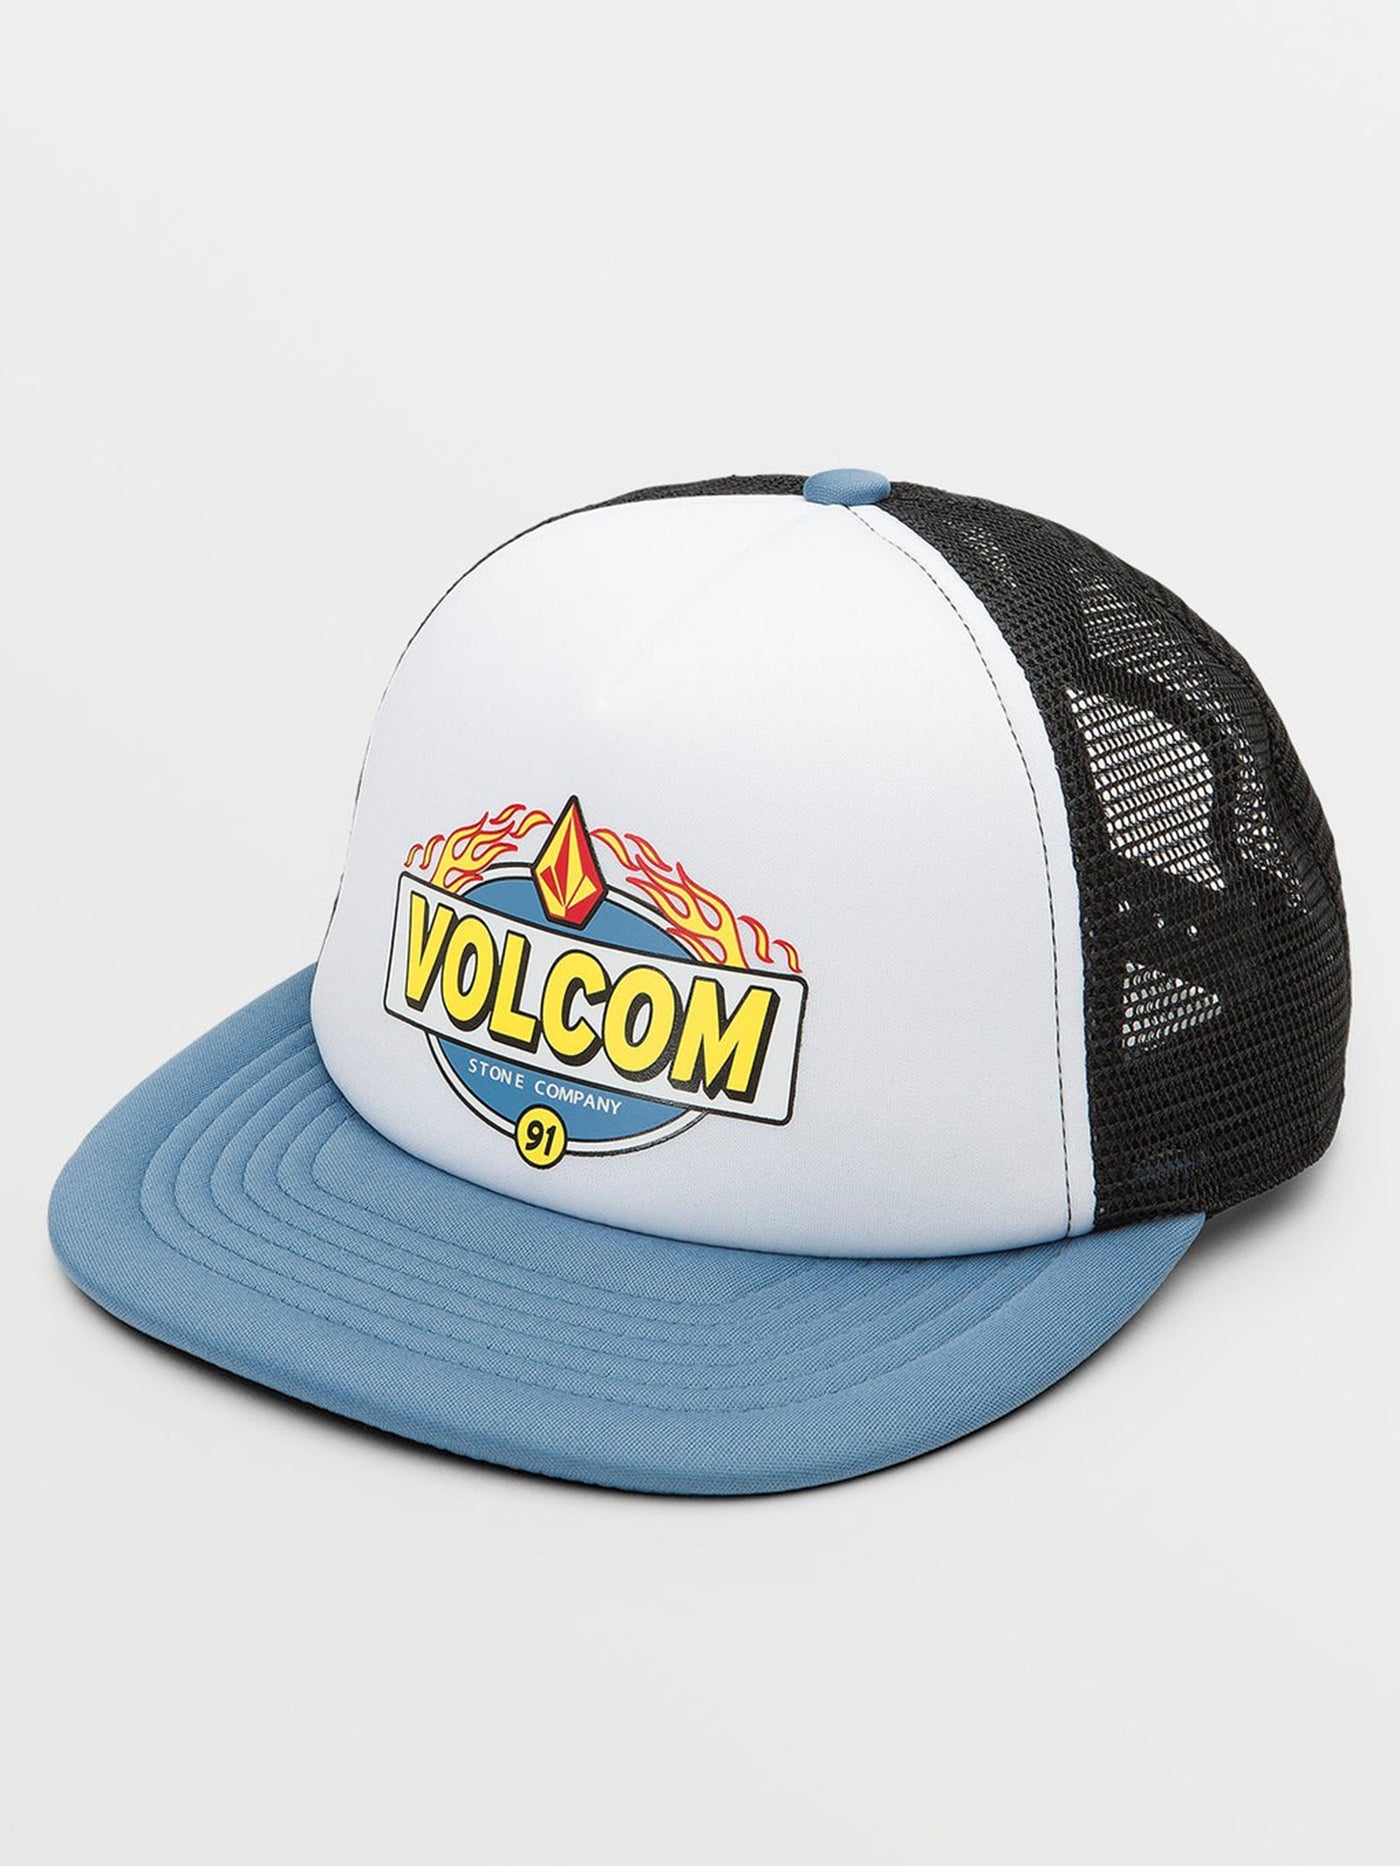 Volcom Hot Cheese Trucker Hat